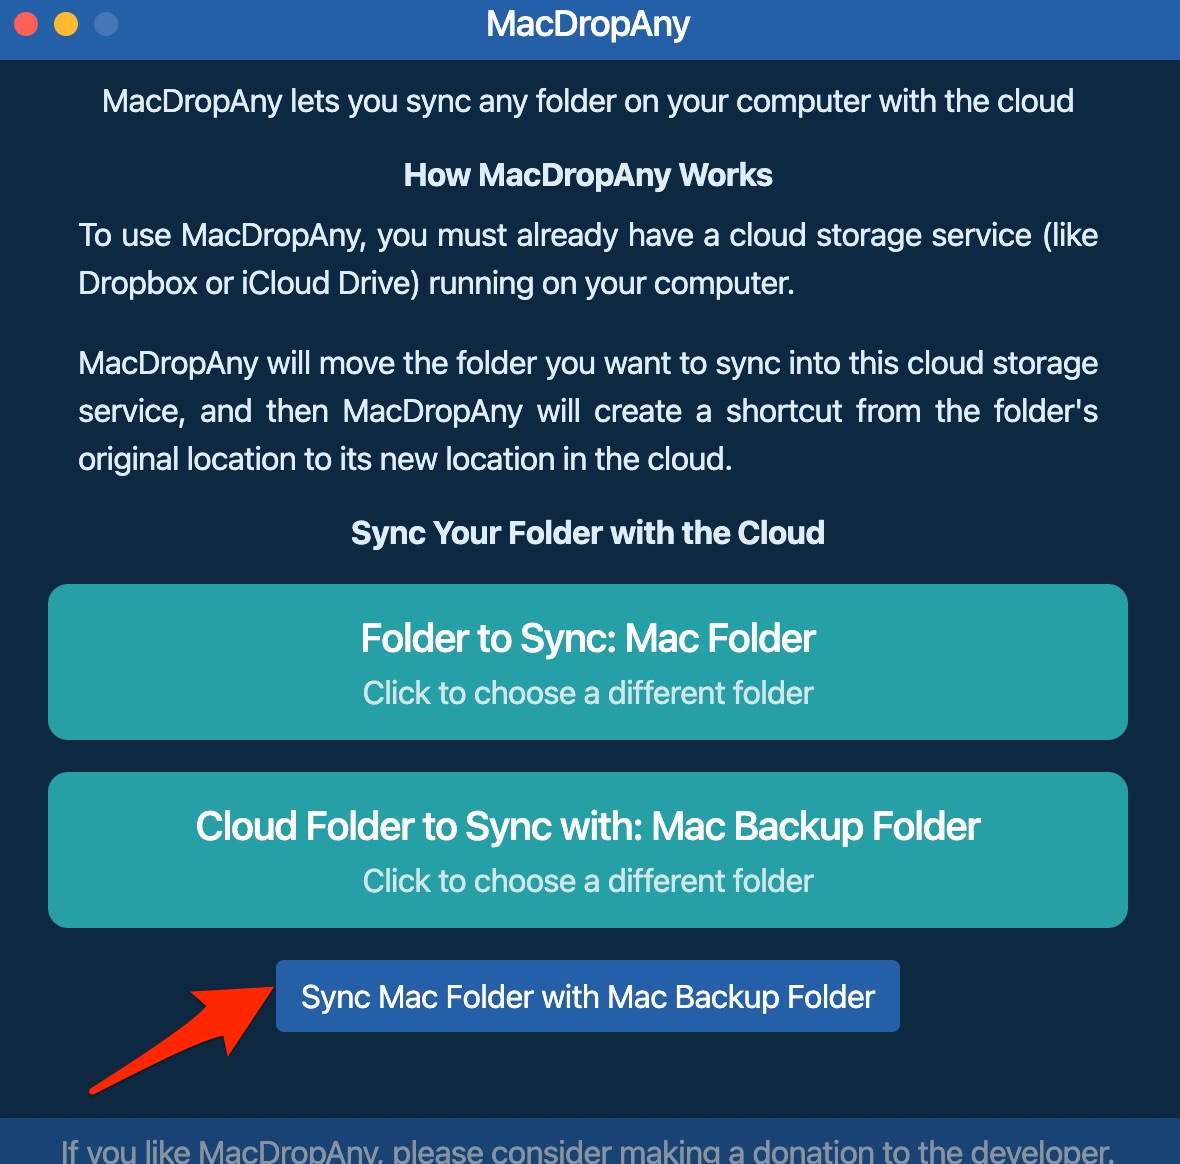 Sync Mac Folder with Mac backup Folder